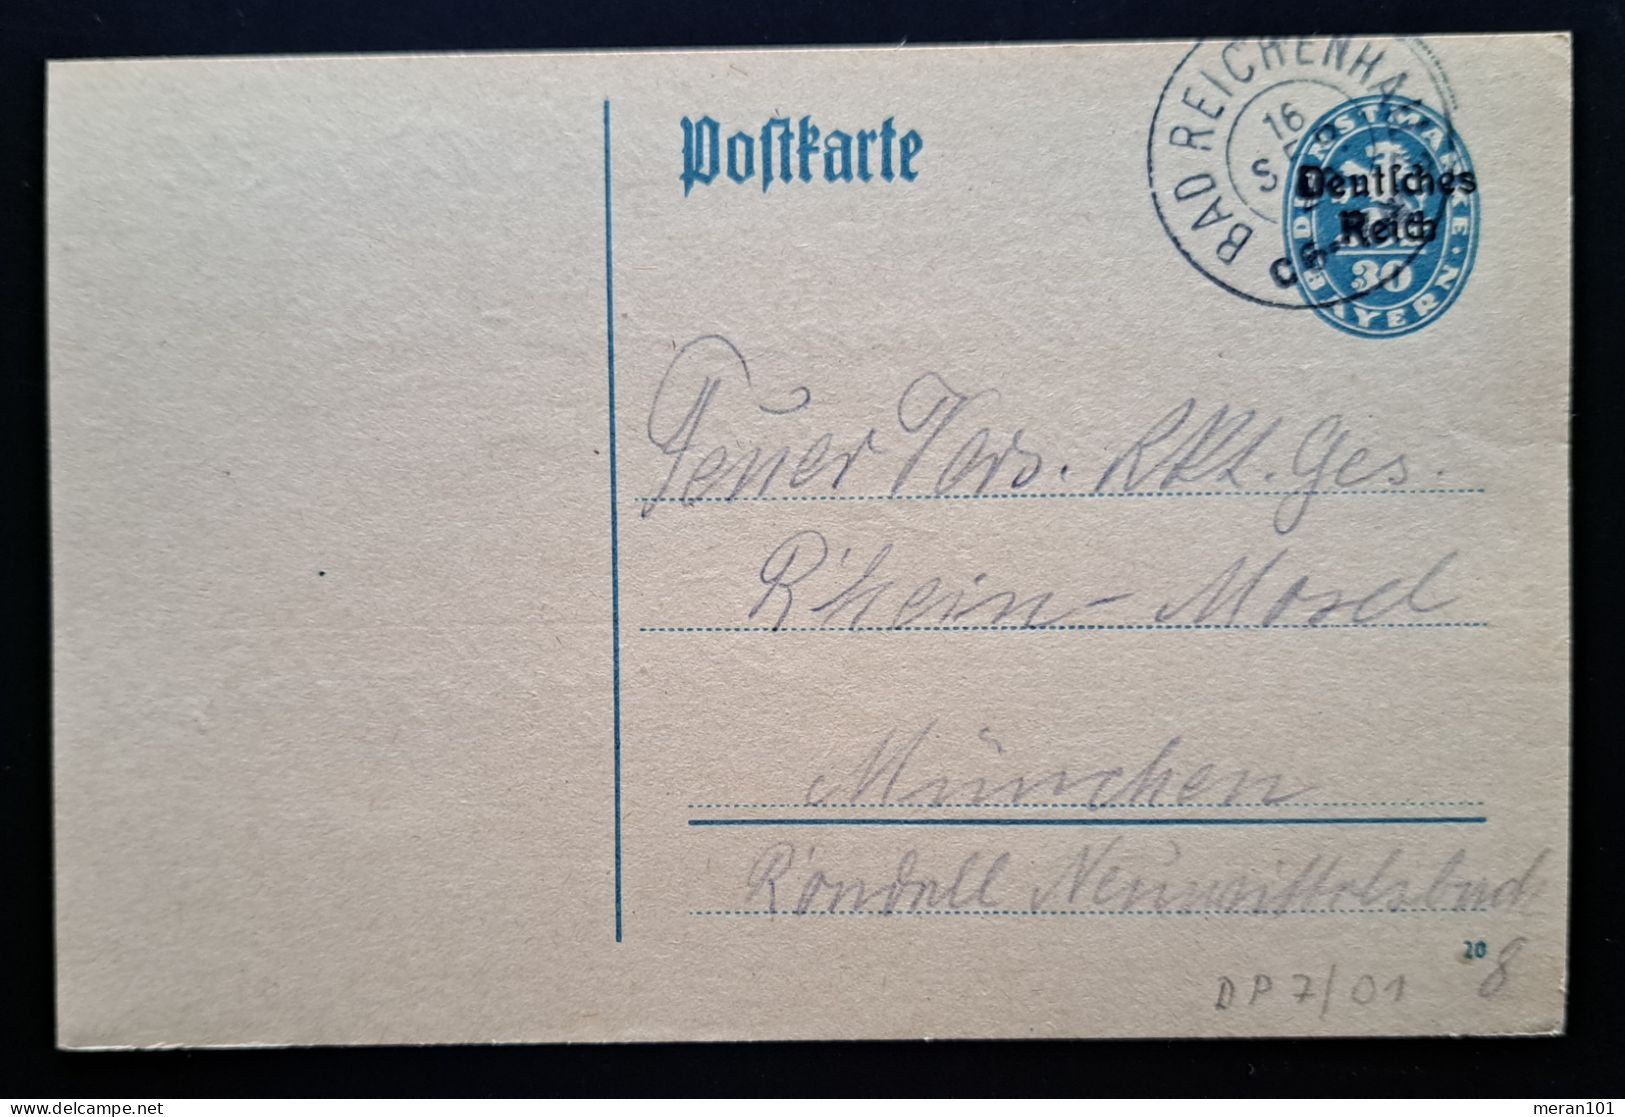 Deutsches Reich DIENST 1920, Dienstpostkarte DP7/01 BAD REICHENHALL - Officials